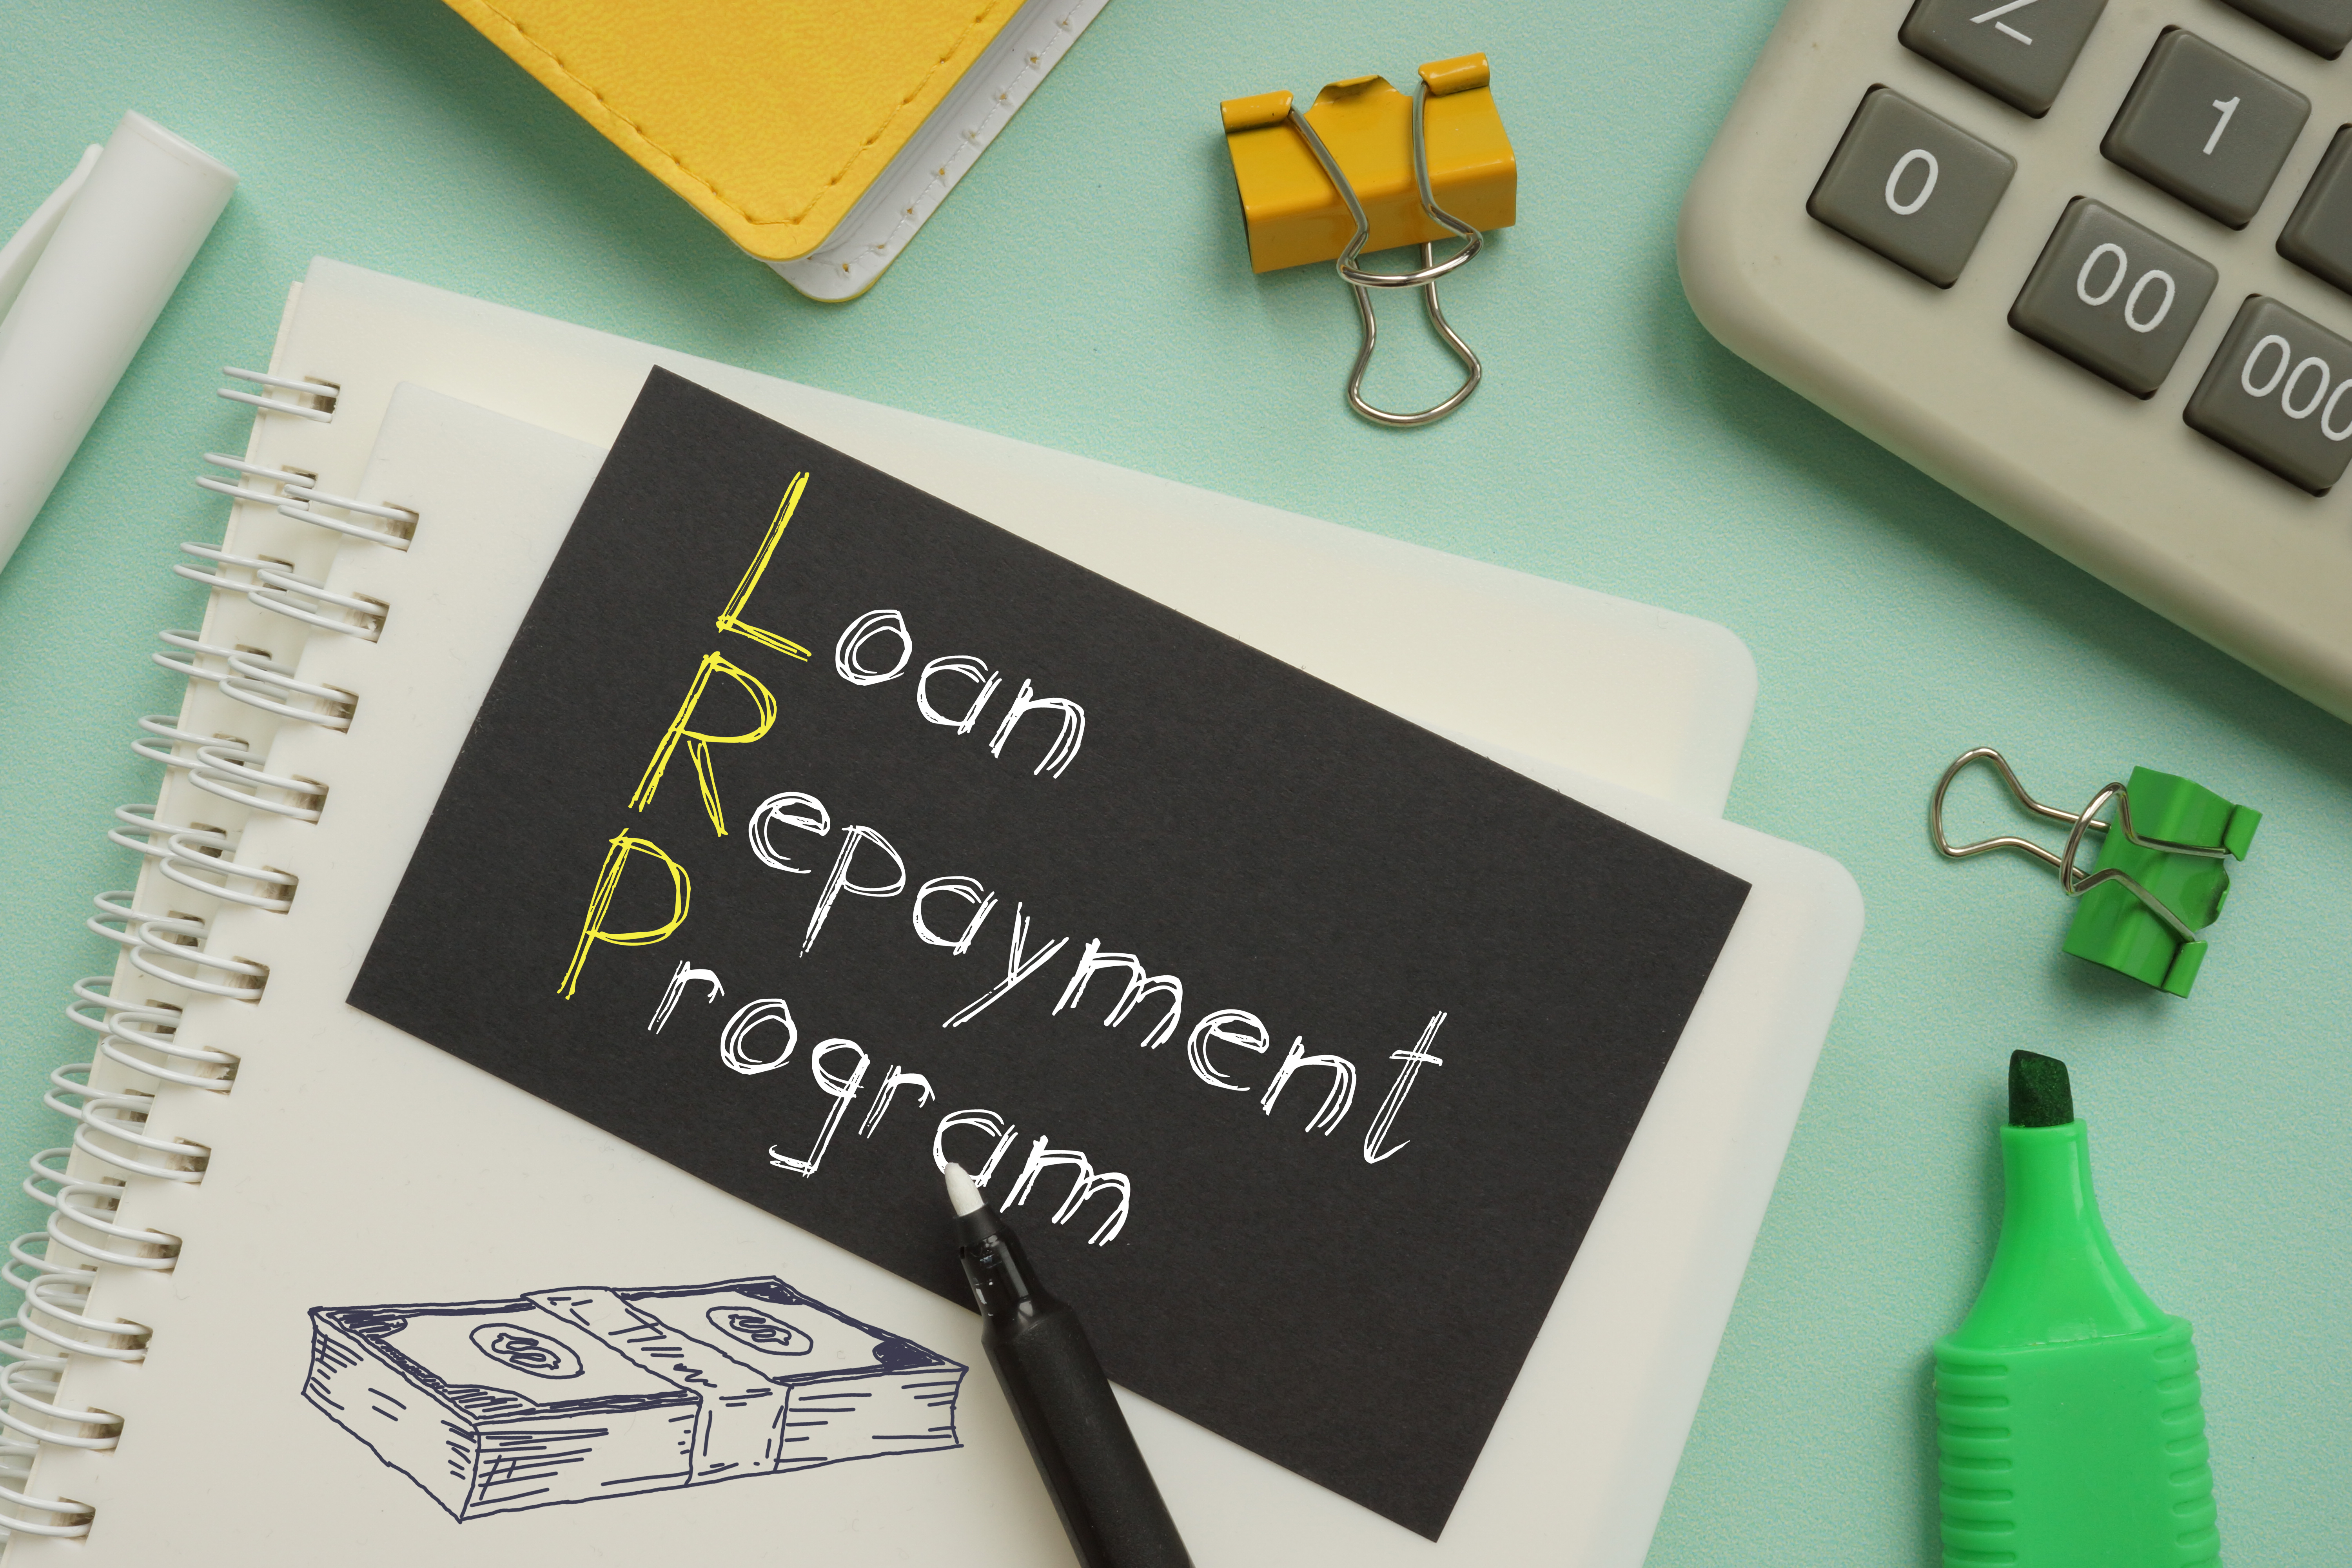 Loan repayment program image